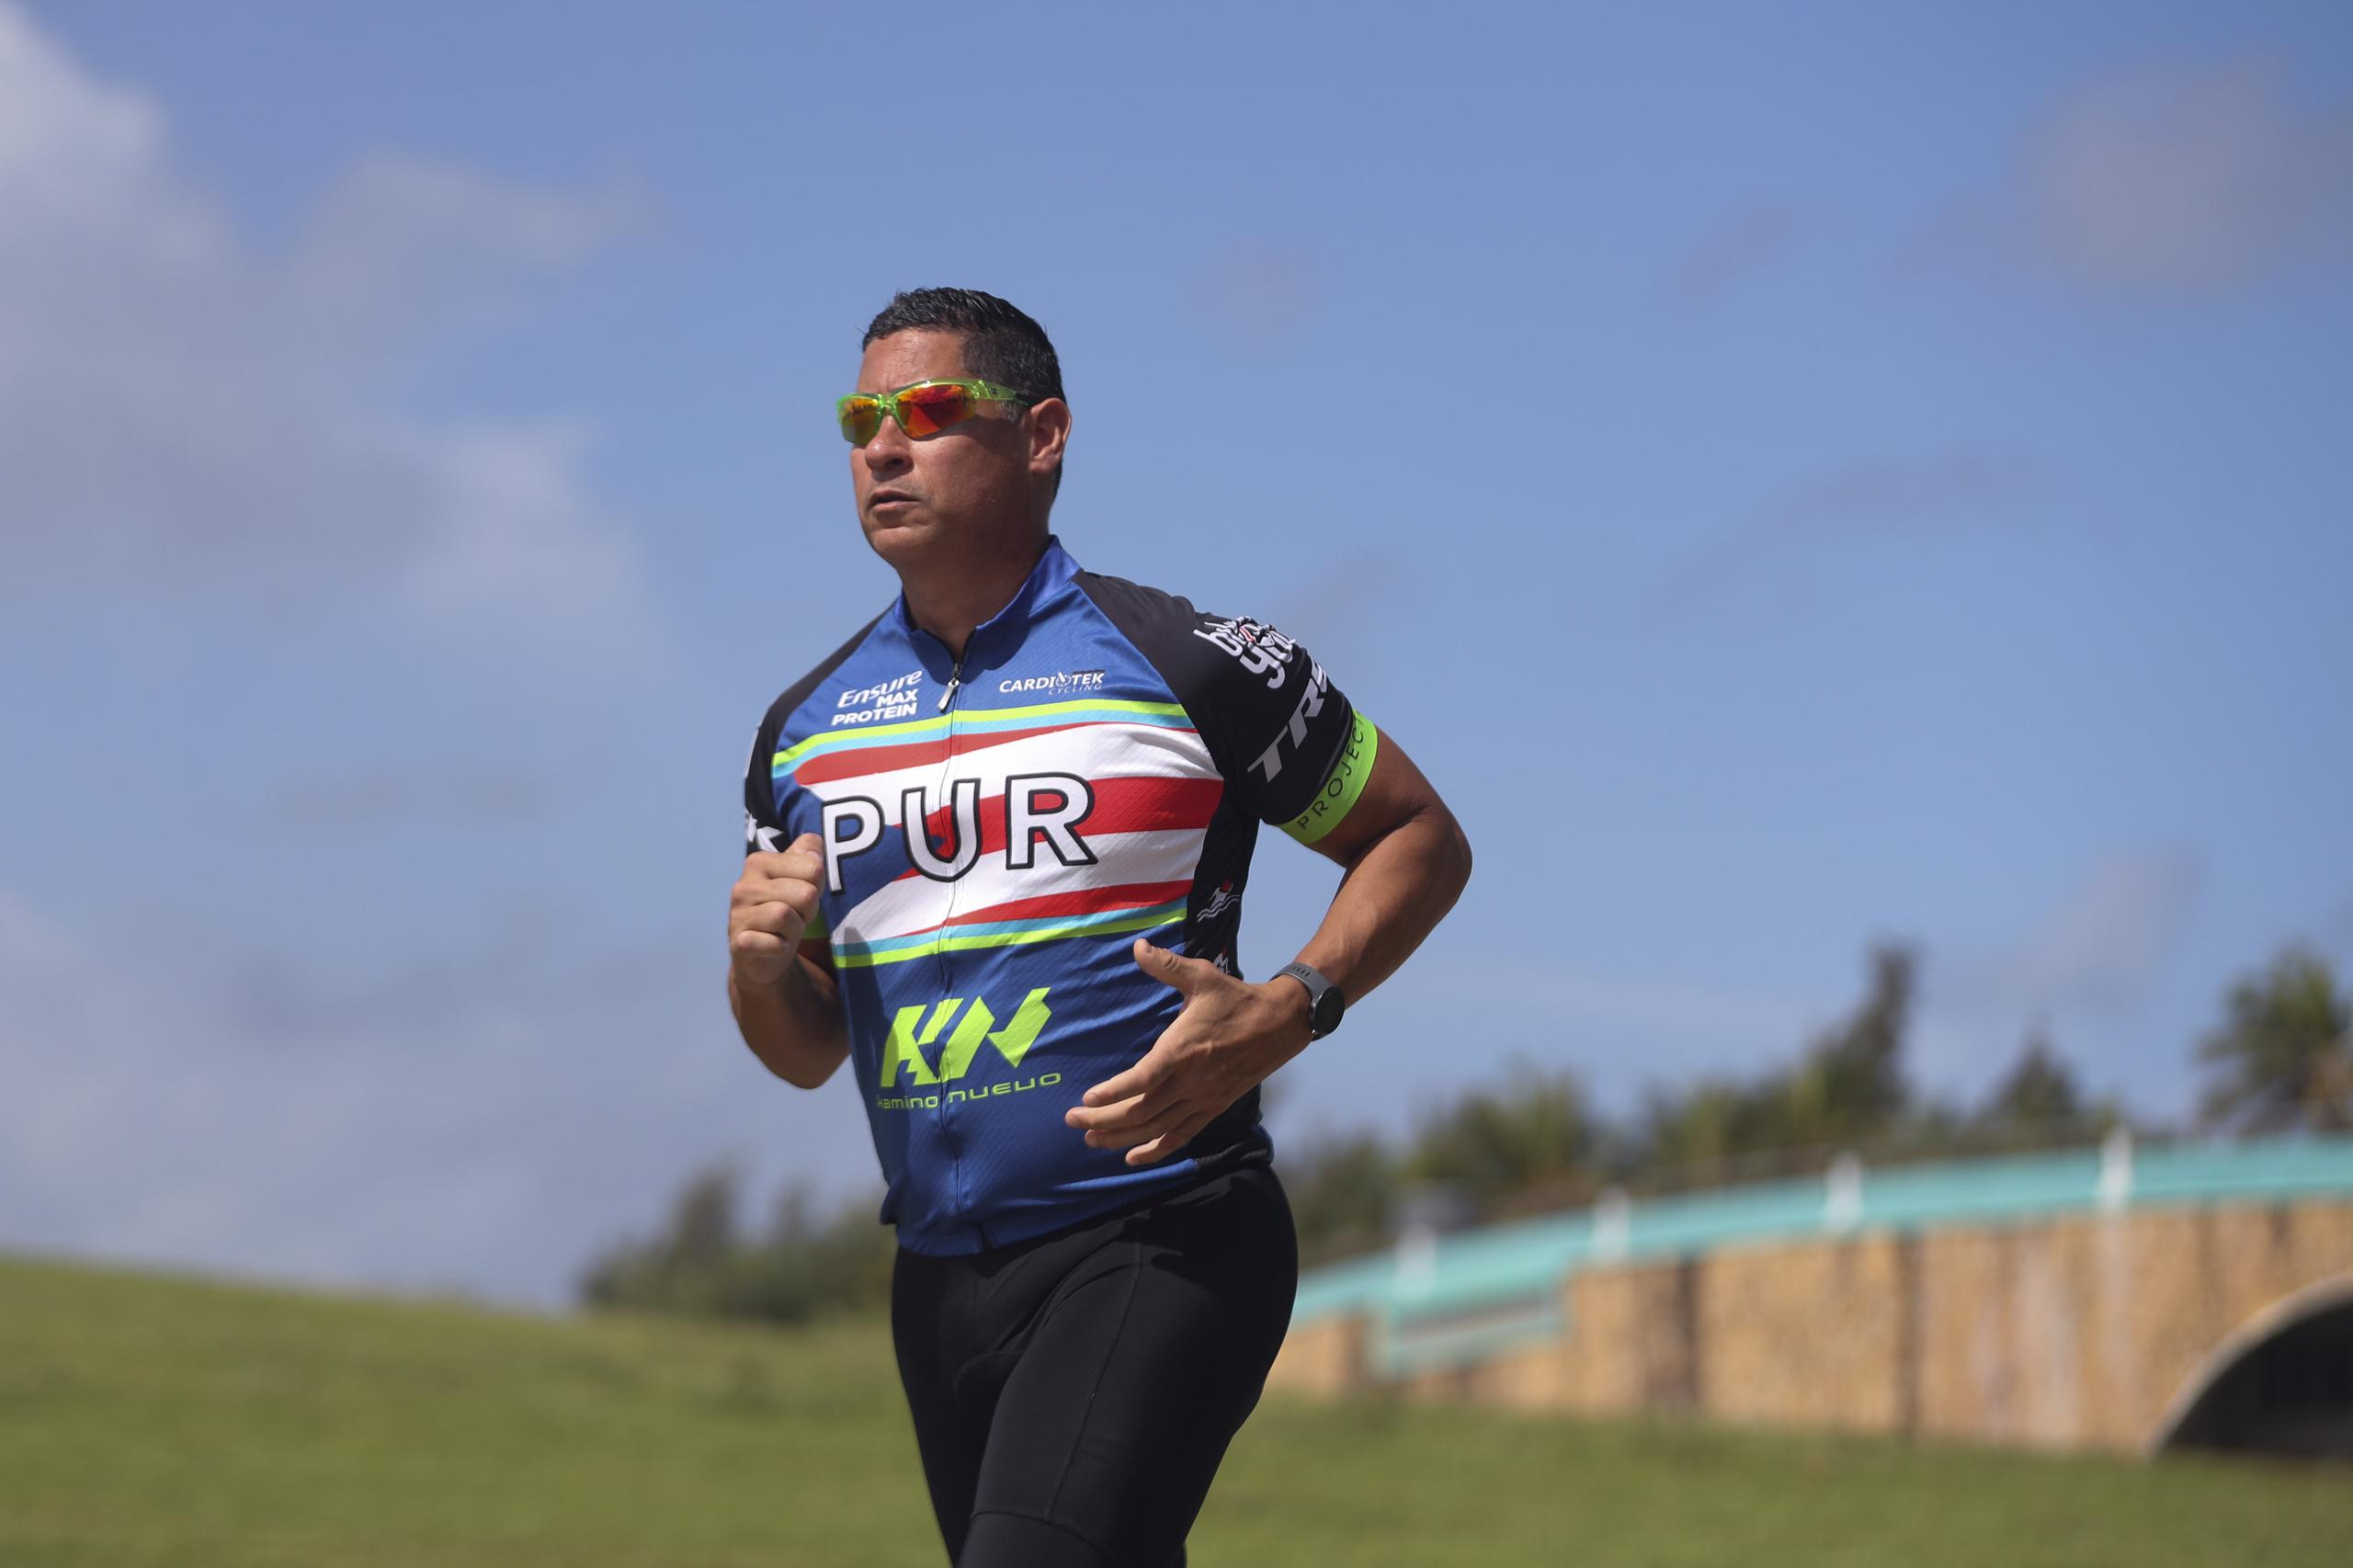 Samuel Ubiñas será quien recorra los 10 kilómetros de carrera pedestre. Dijo que dedicará su actuación a Juan Mora, quien corrió la ruta en la anterior participación del grupo en el 2020, y quien ahora no podrá competir porque su condición se ha agravado.